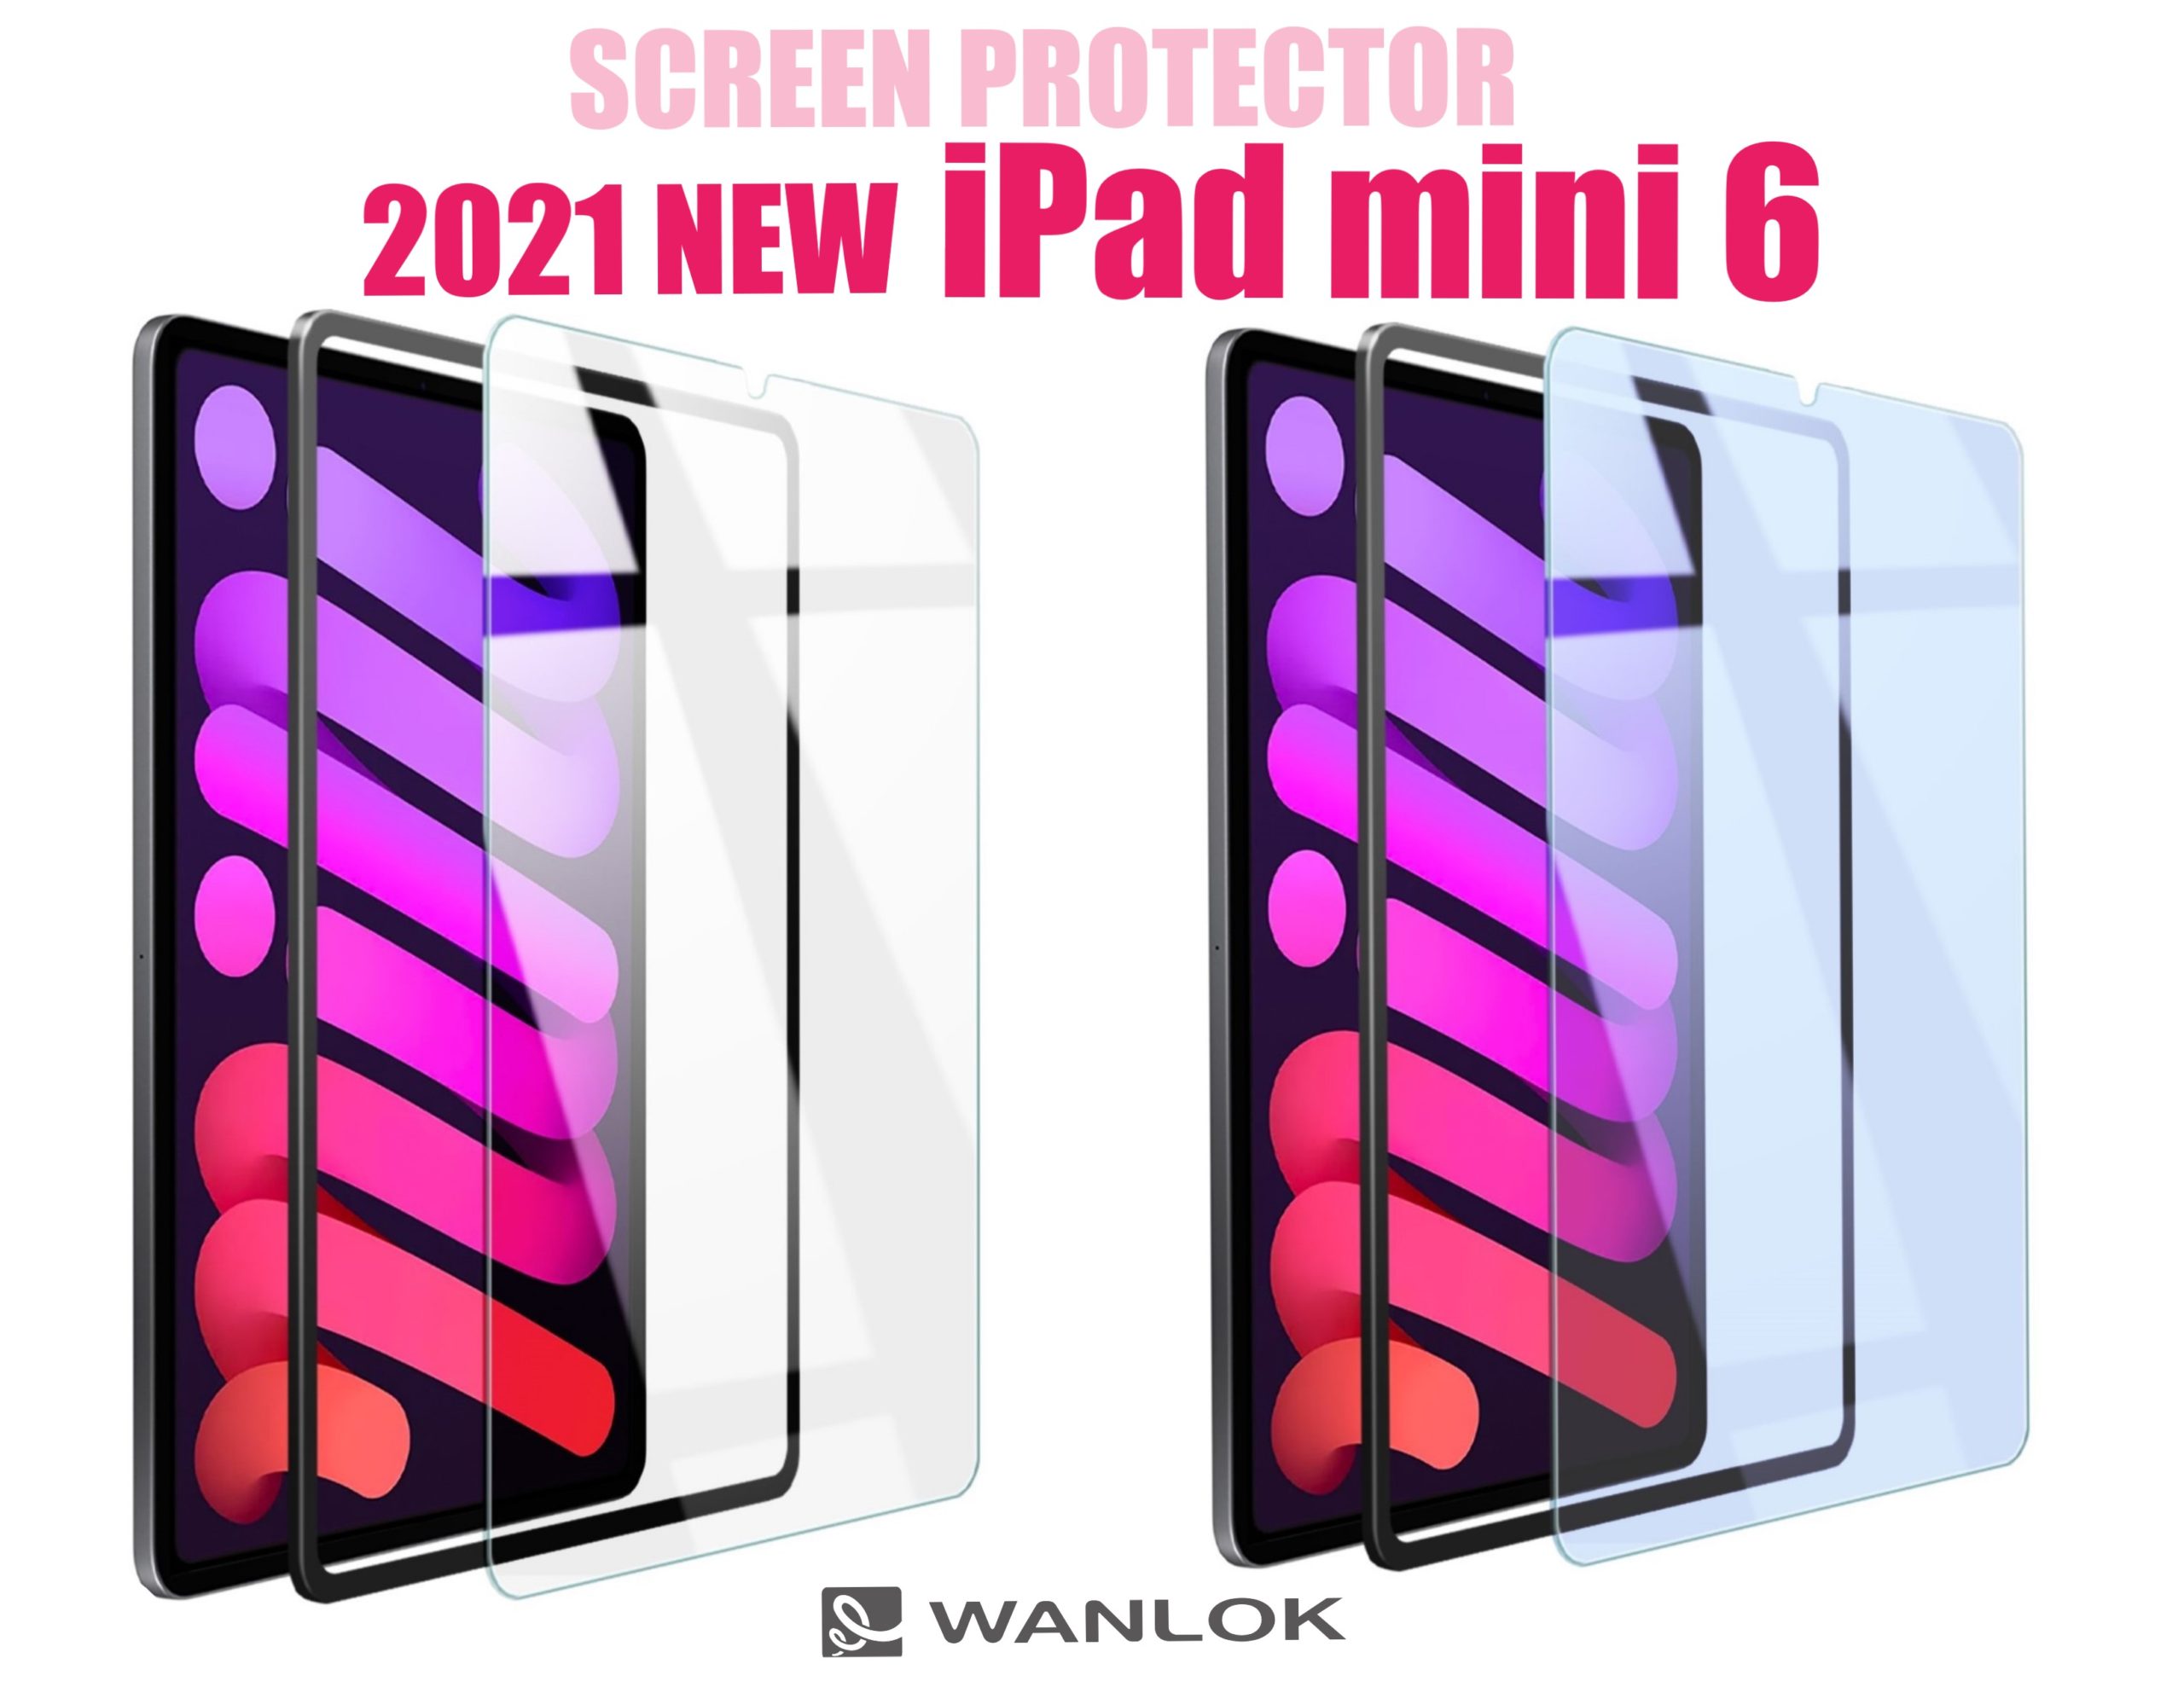 291円 公式ストア iPad mini5 2020 mini4 ガラスフィルムiPad ミニ5 iPadミニ4 7.9